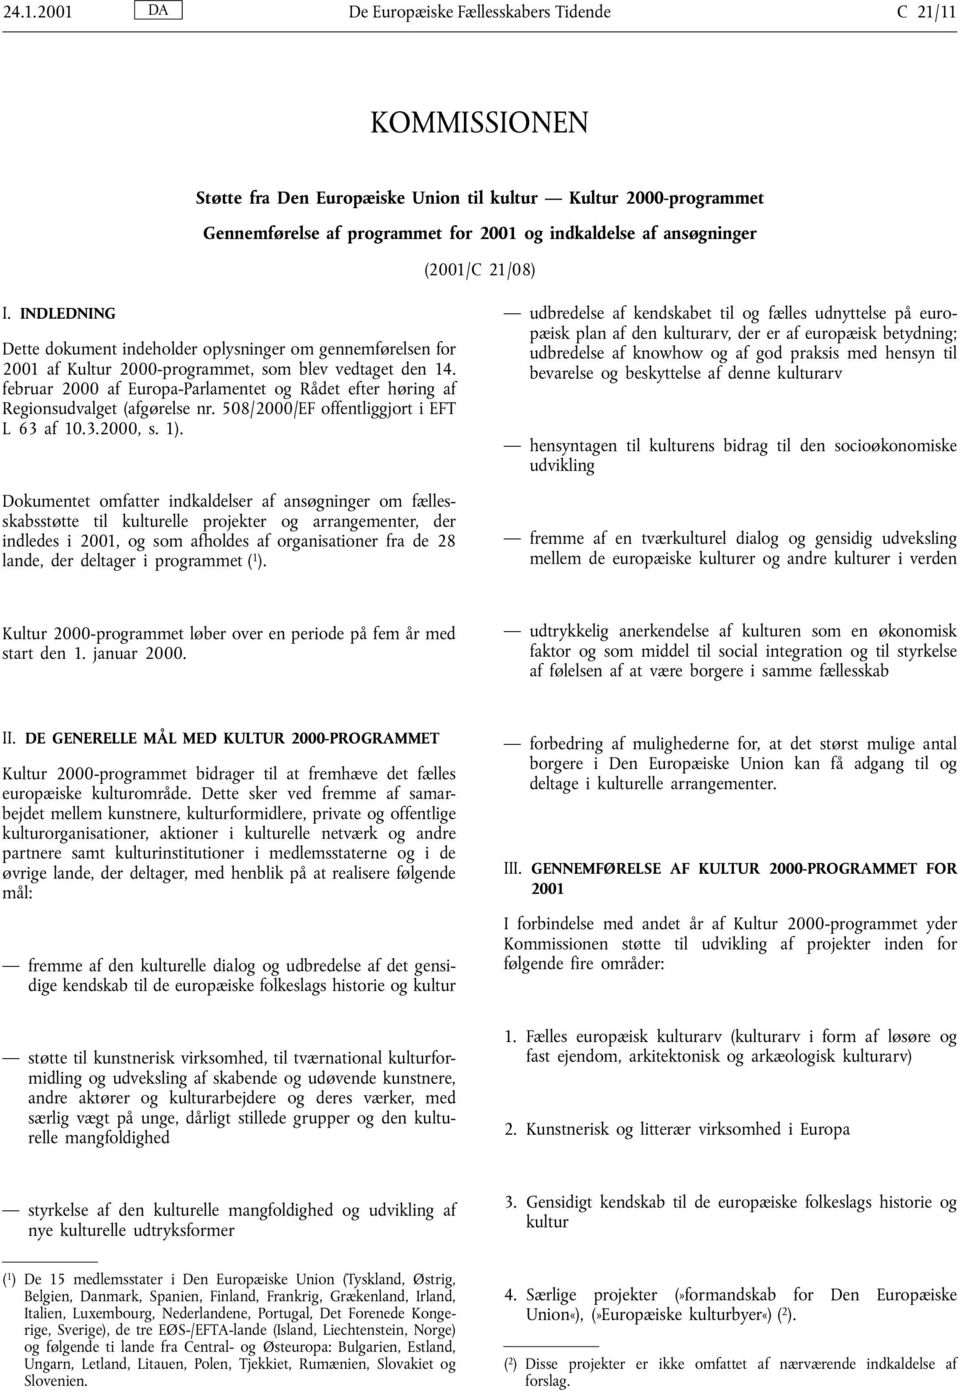 februar 2000 af Europa-Parlamentet og Rådet efter hłring af Regionsudvalget (afgłrelse nr. 508/2000/EF offentliggjort i EFT L 63 af 10.3.2000, s. 1).